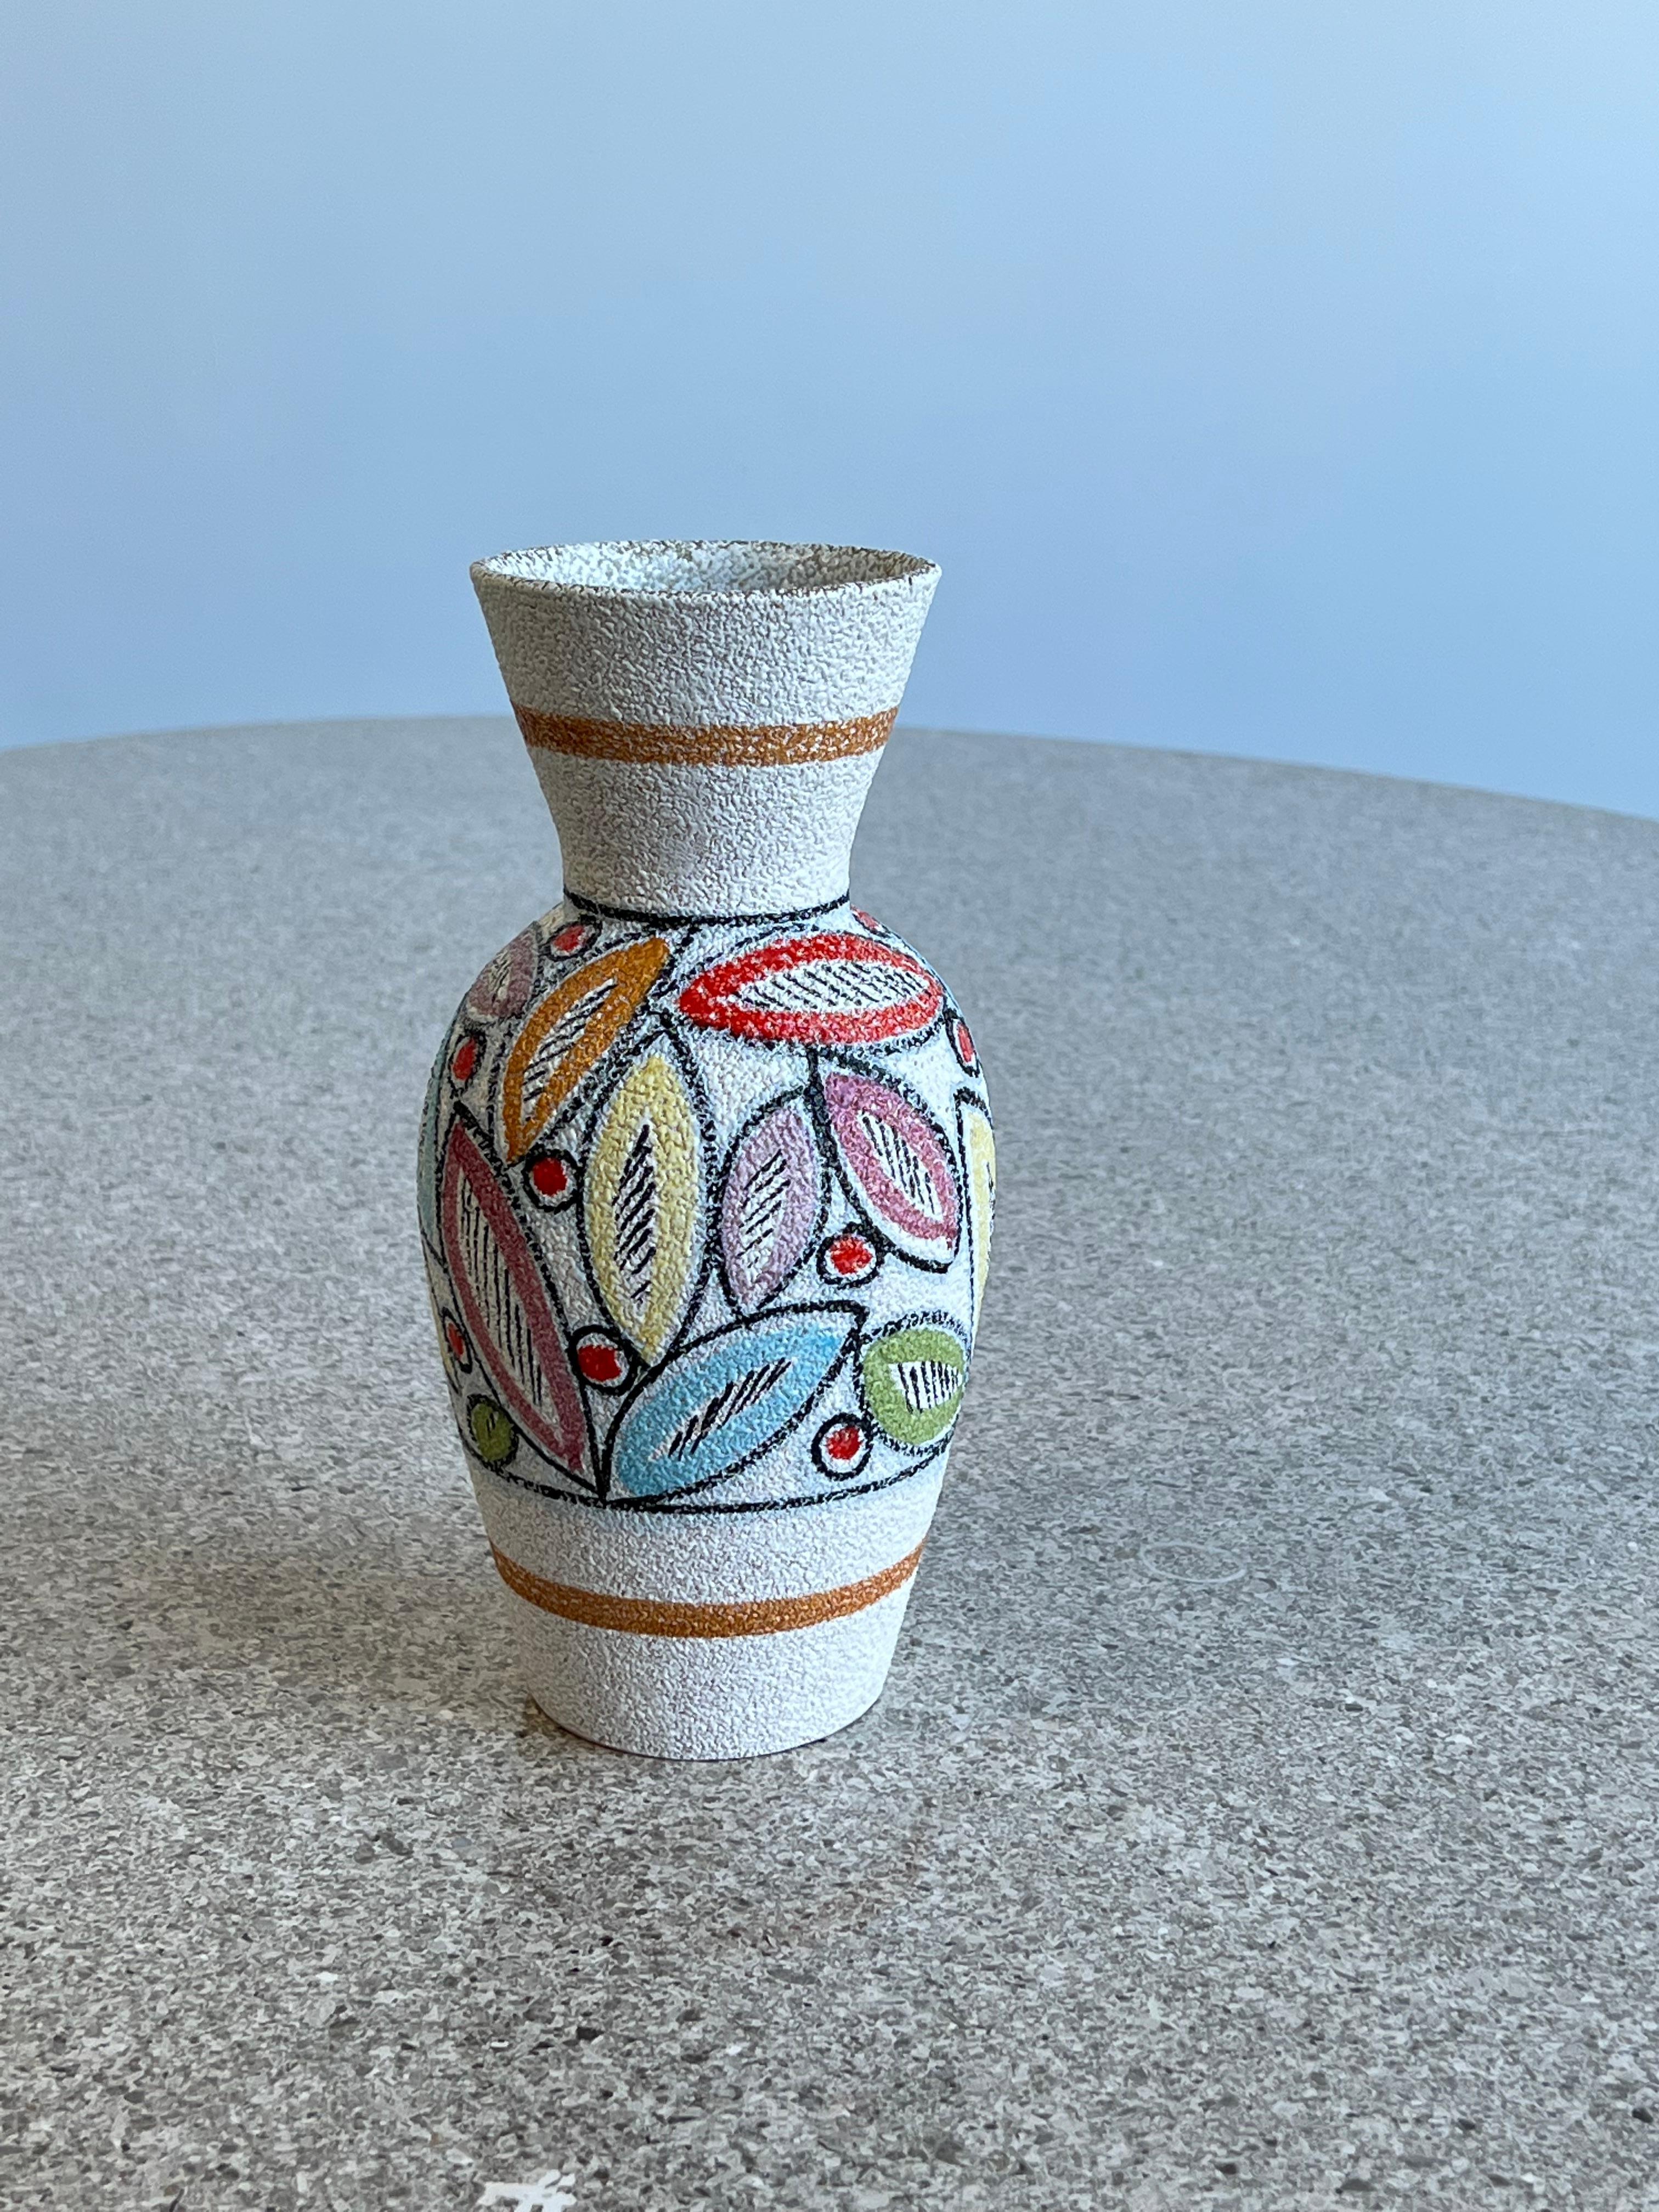 Italienische Vase aus Keramik, handbemalt, 1950er Jahre.
Wunderschöne Vase, handbemalt mit farbenfrohen abstrakten Blättern, erstaunliche Keramiktextur.